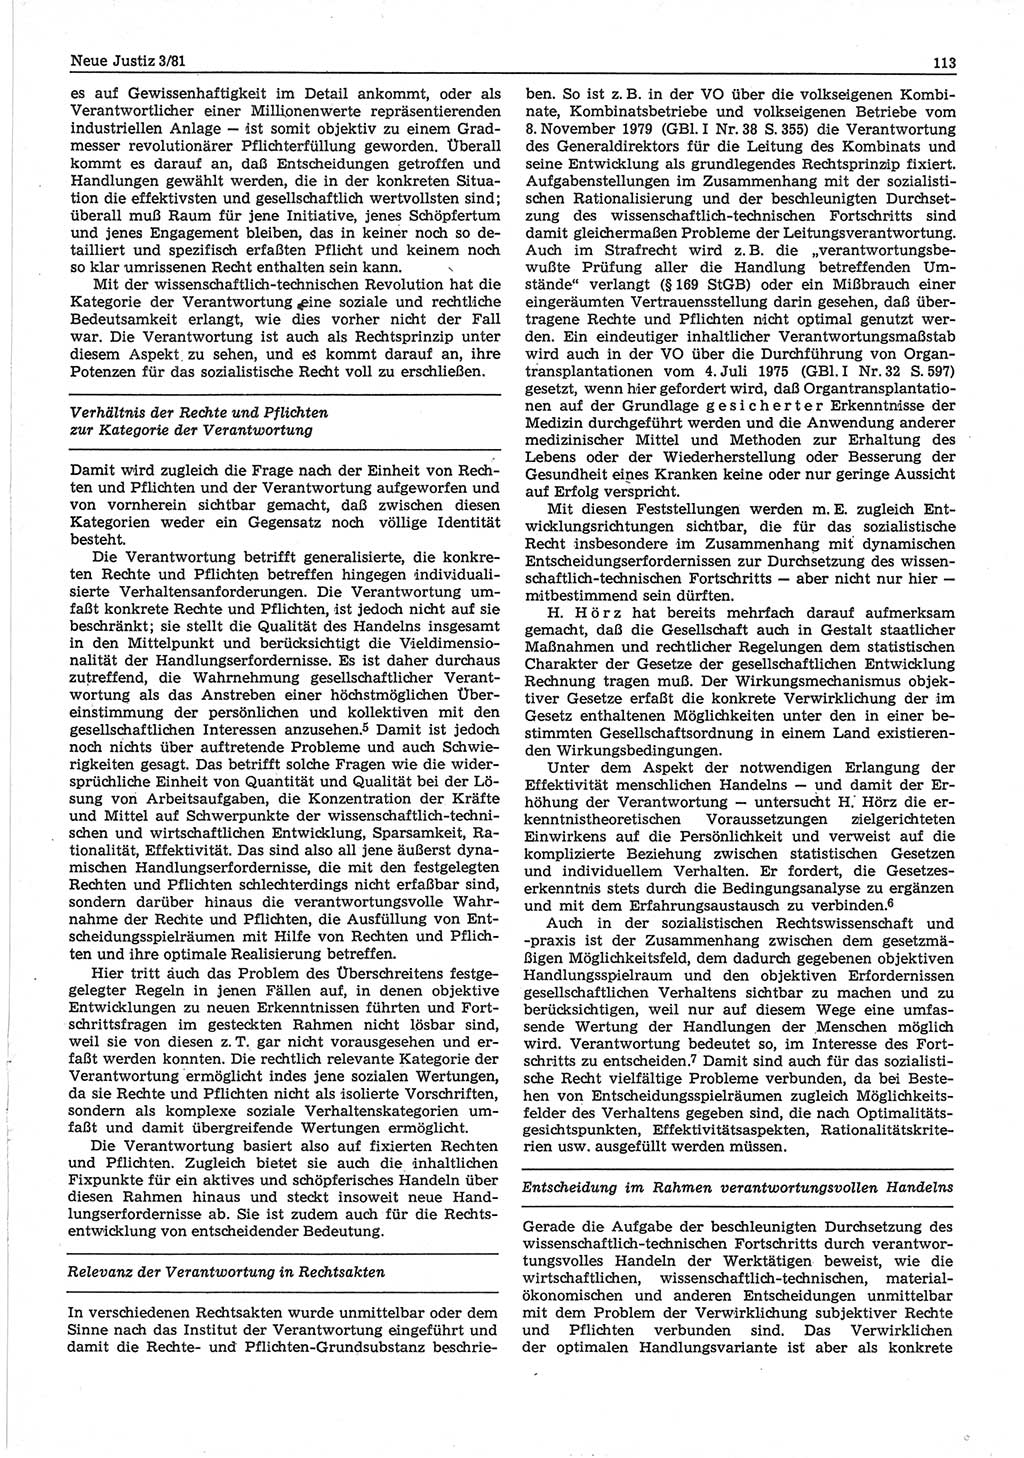 Neue Justiz (NJ), Zeitschrift für sozialistisches Recht und Gesetzlichkeit [Deutsche Demokratische Republik (DDR)], 35. Jahrgang 1981, Seite 113 (NJ DDR 1981, S. 113)